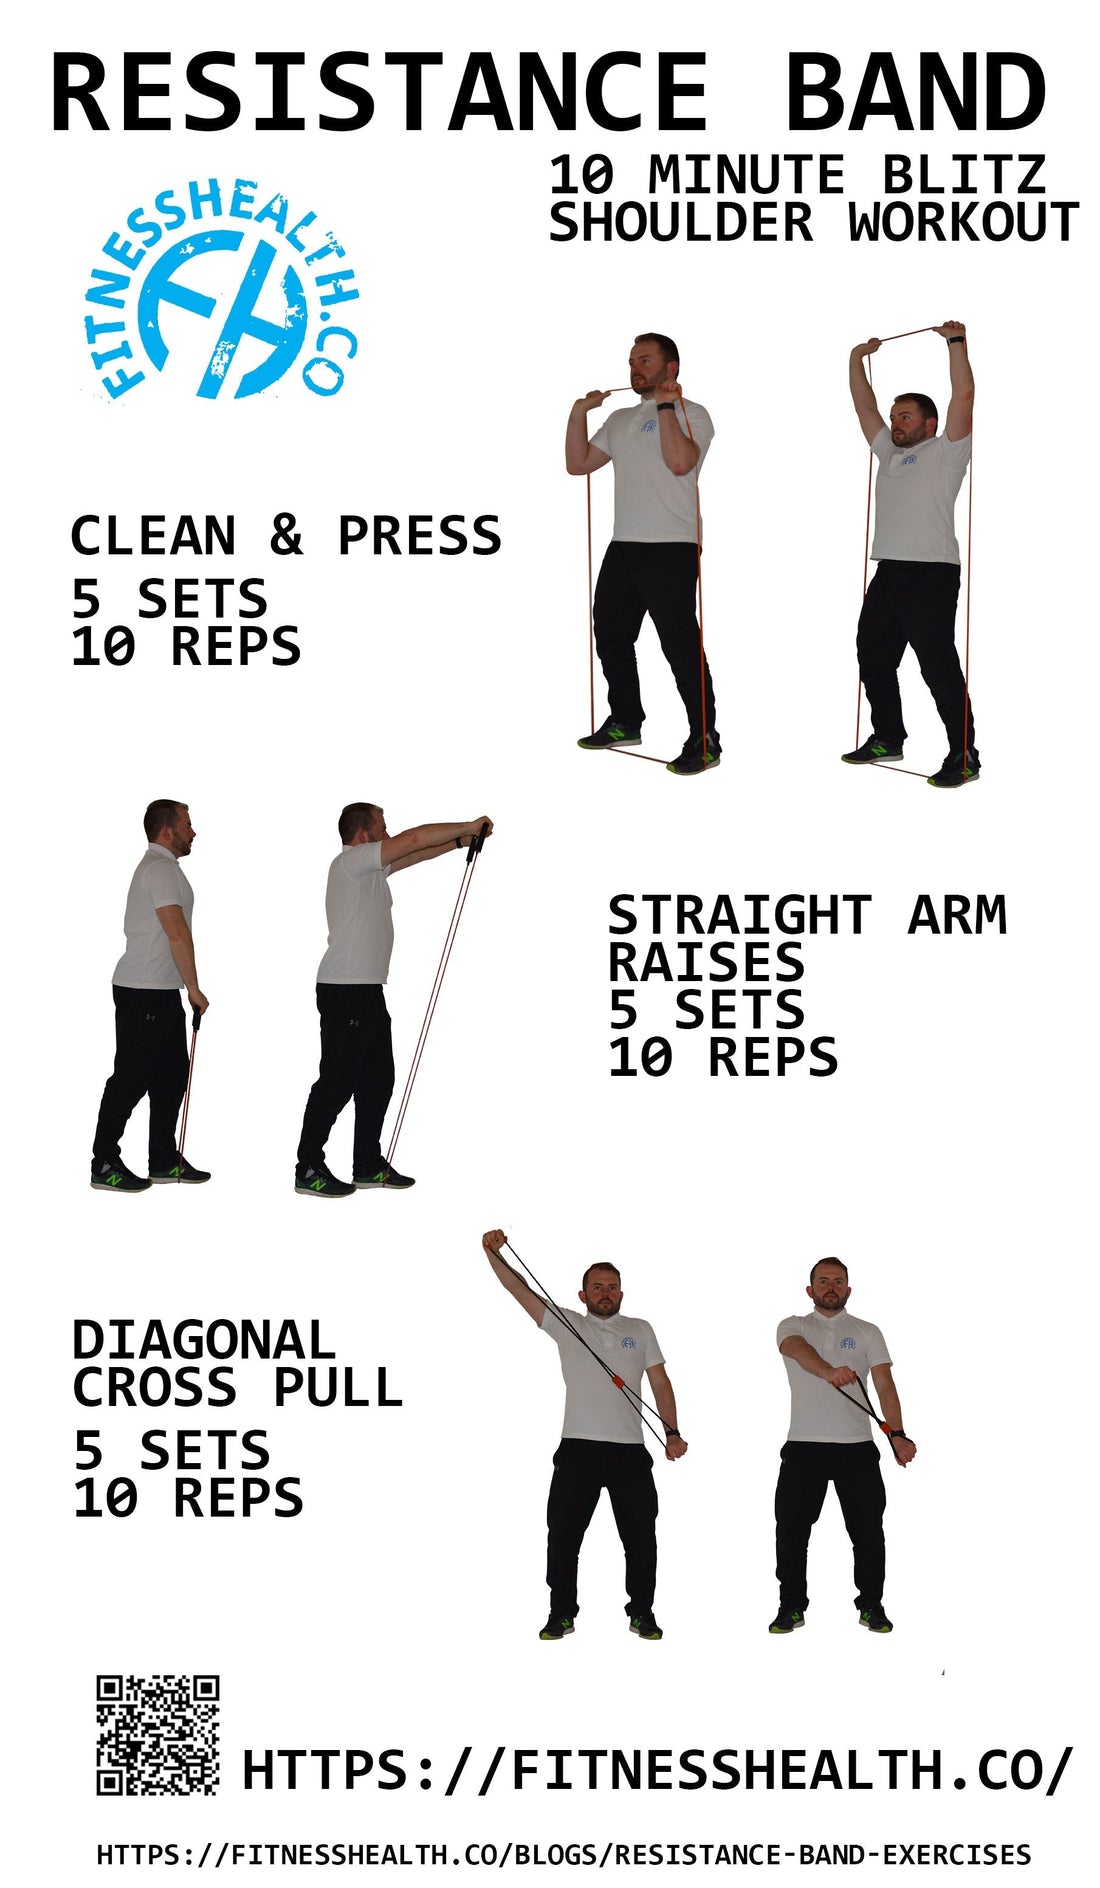 10 minute Resistance band shoulder workout